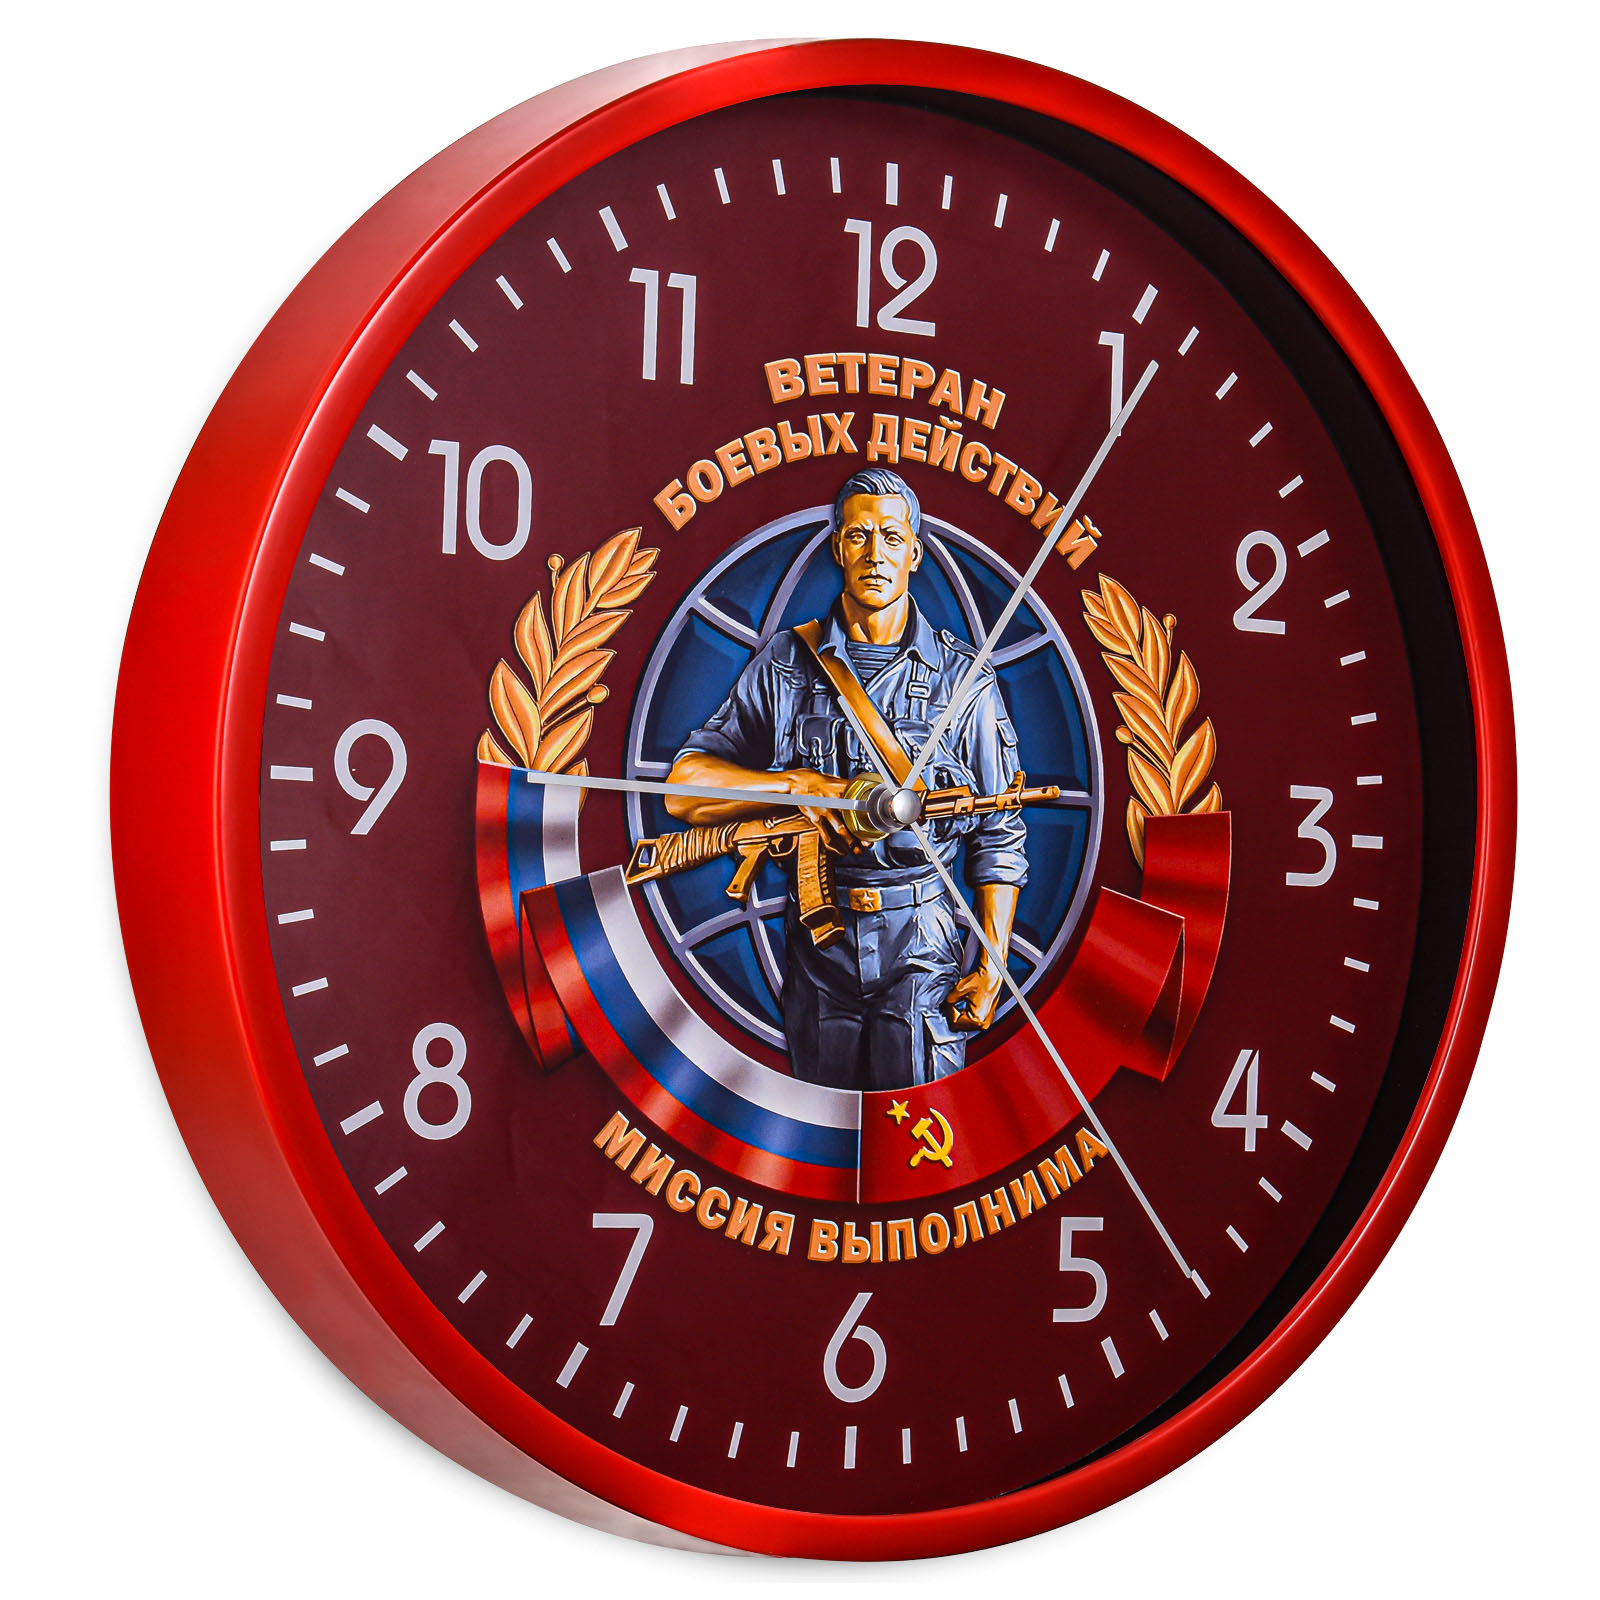 Подарочные часы Ветерану боевых действий №93